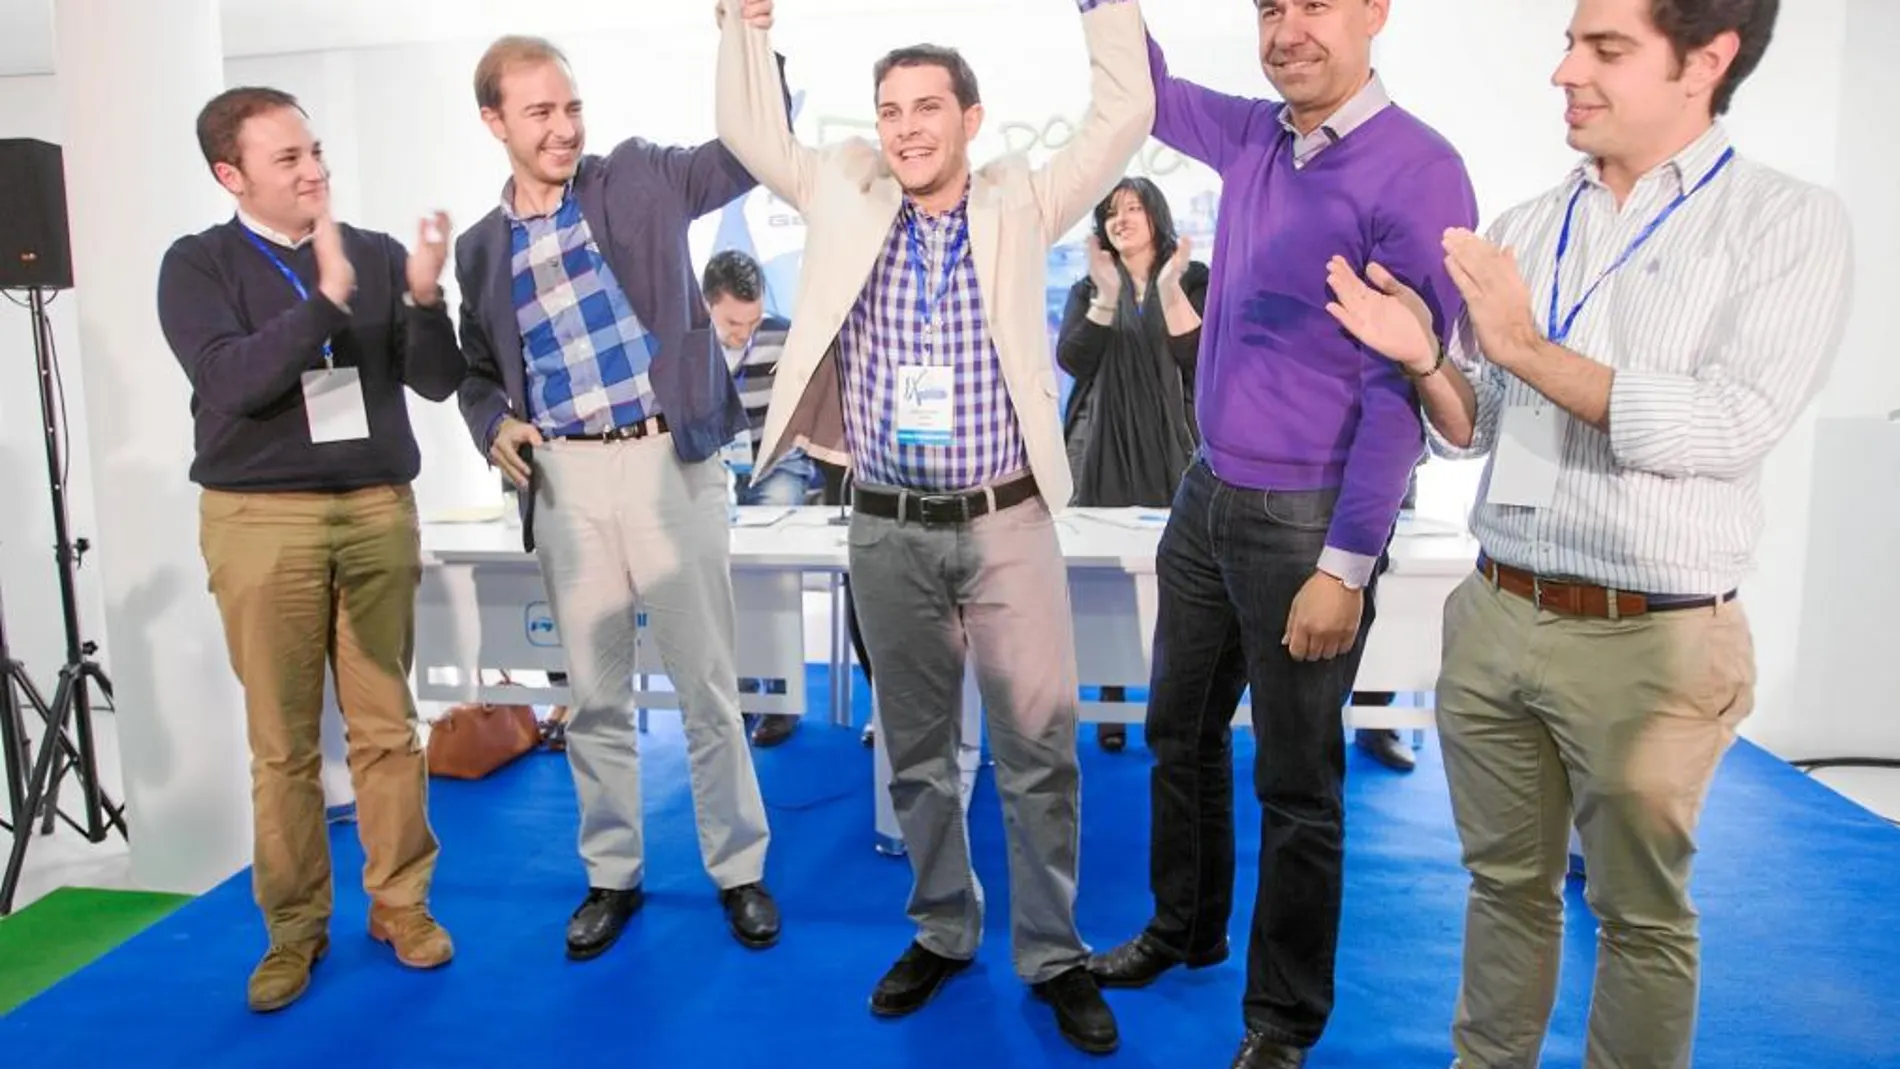 Martínez Maíllo y Javier Dorado levantan los brazos de Víctor López, tras ser reelegido por unanimidad como presidente de NNGG del PP de Zamora, en presencia también de Eduardo Carazo.